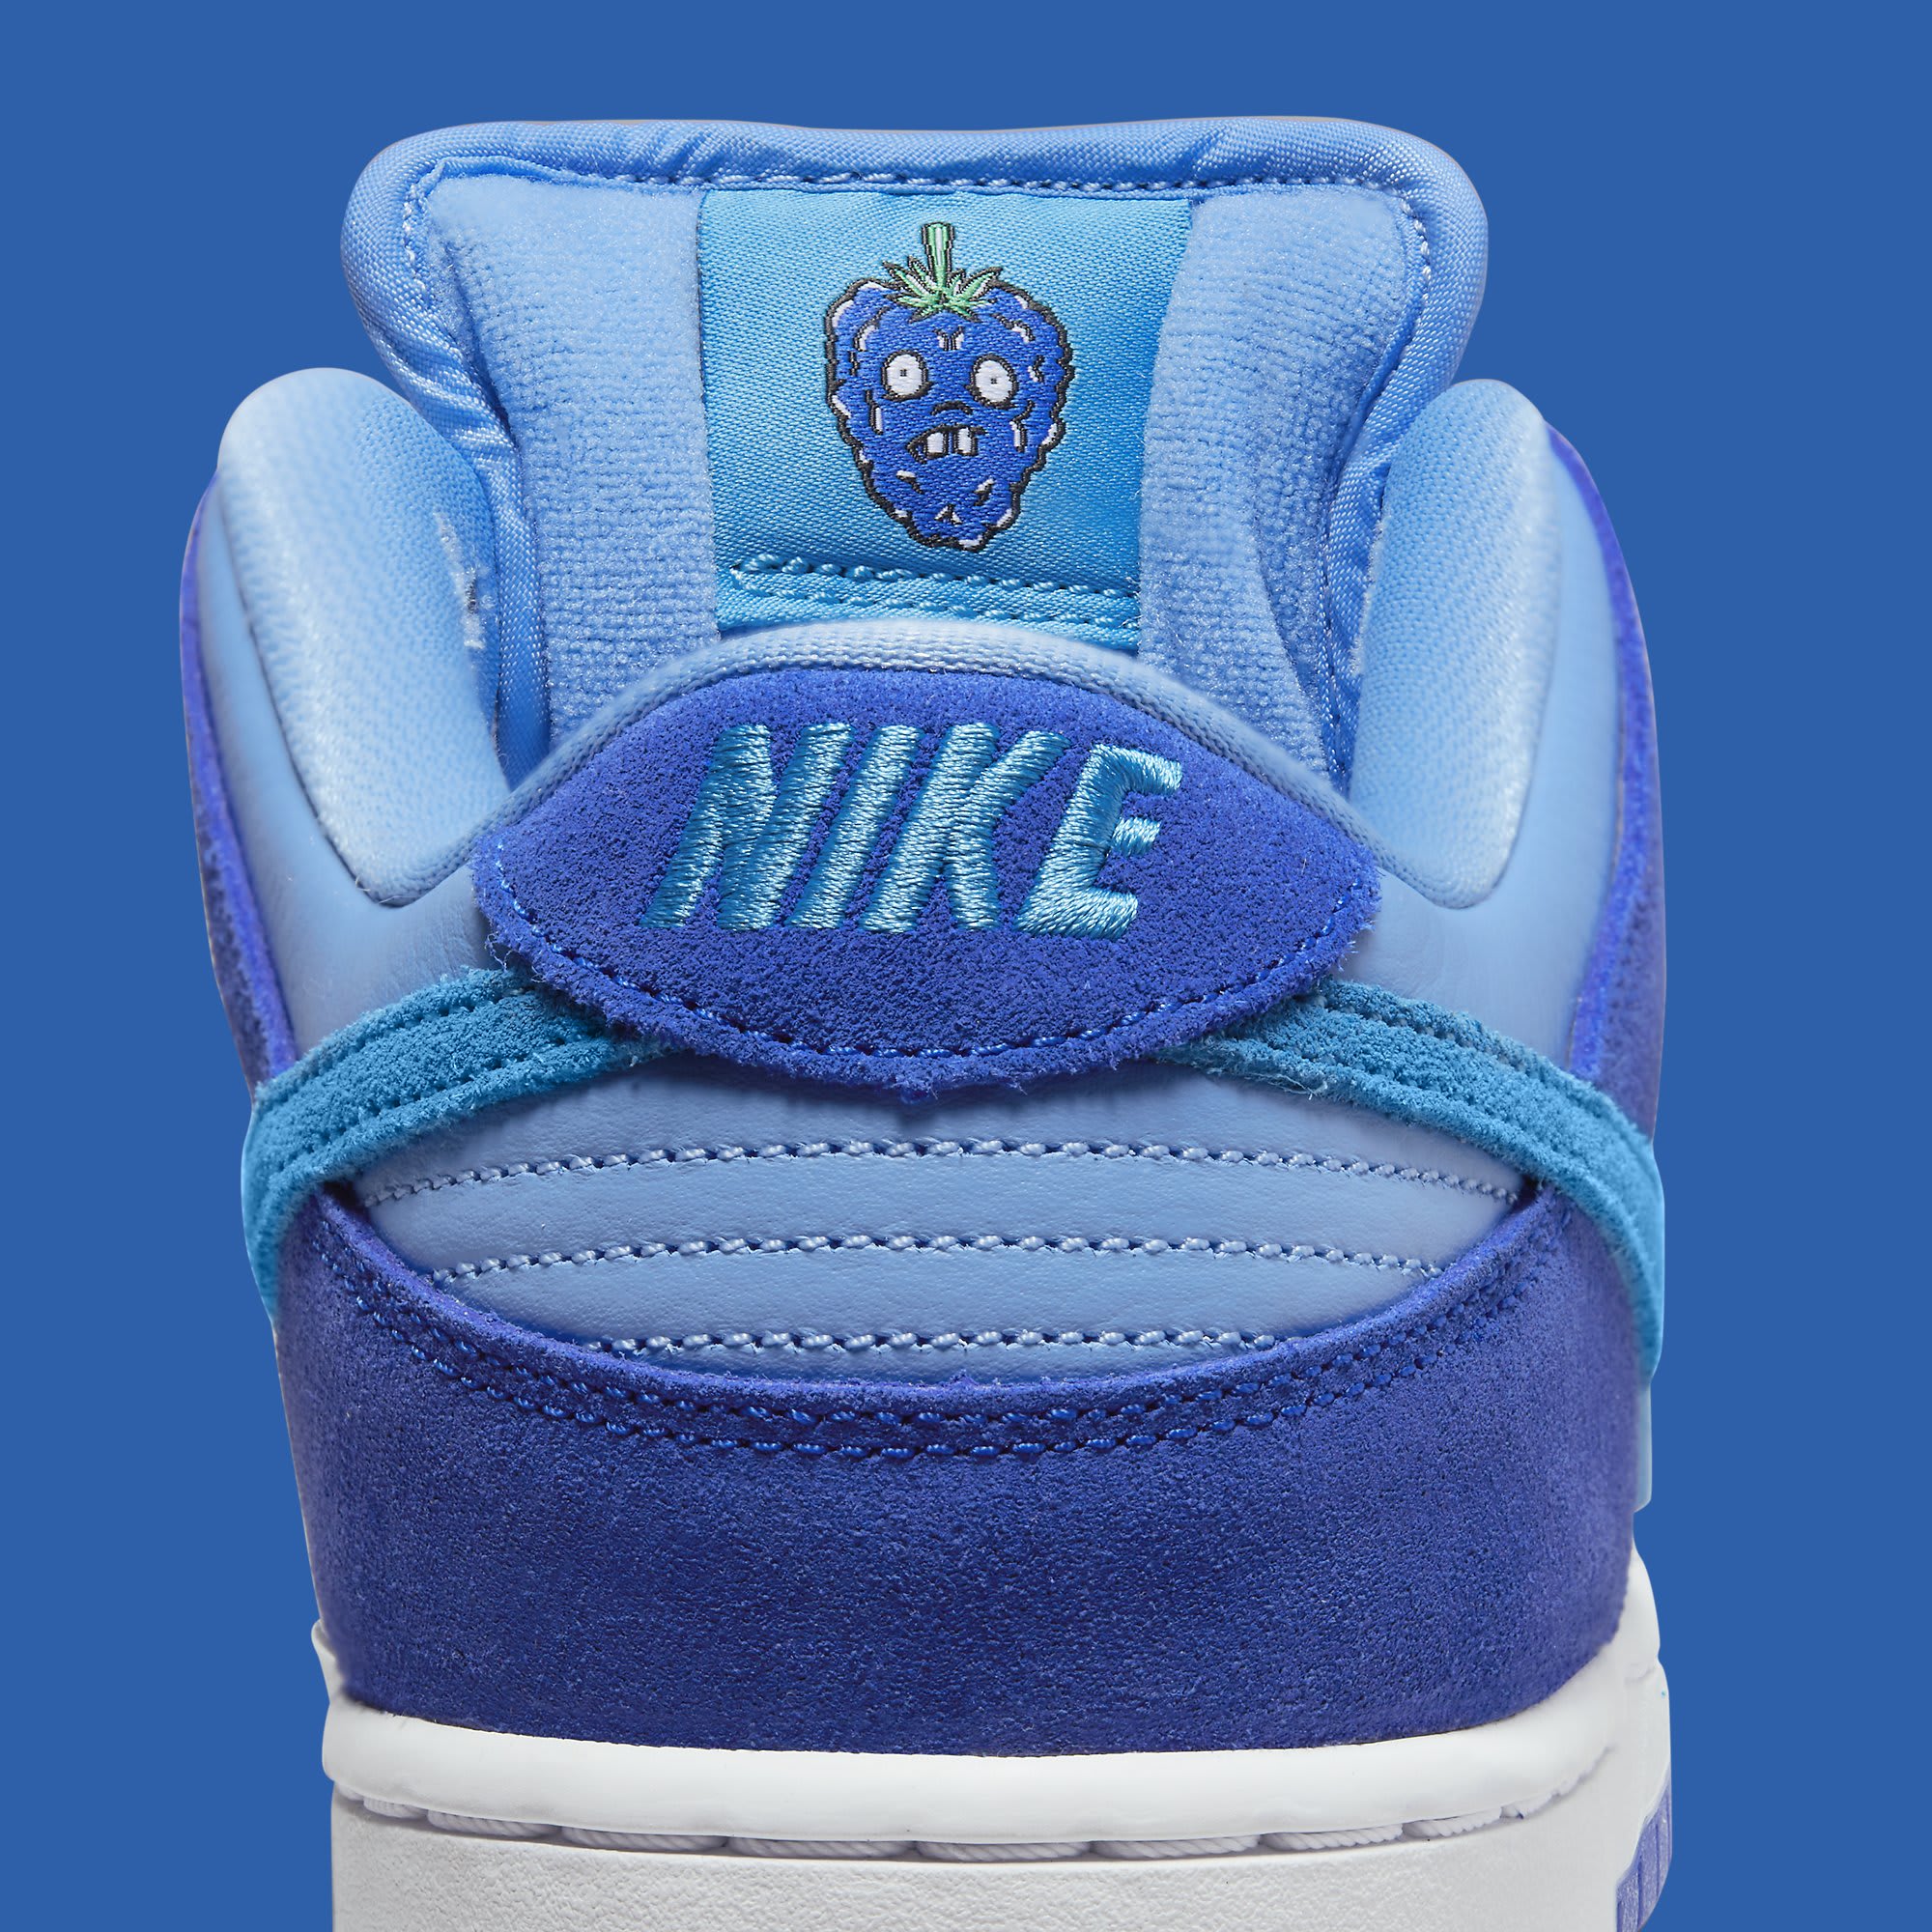 Nike SB Dunk Low 'Blue Raspberry' Release Date 2022 DM0807 400 